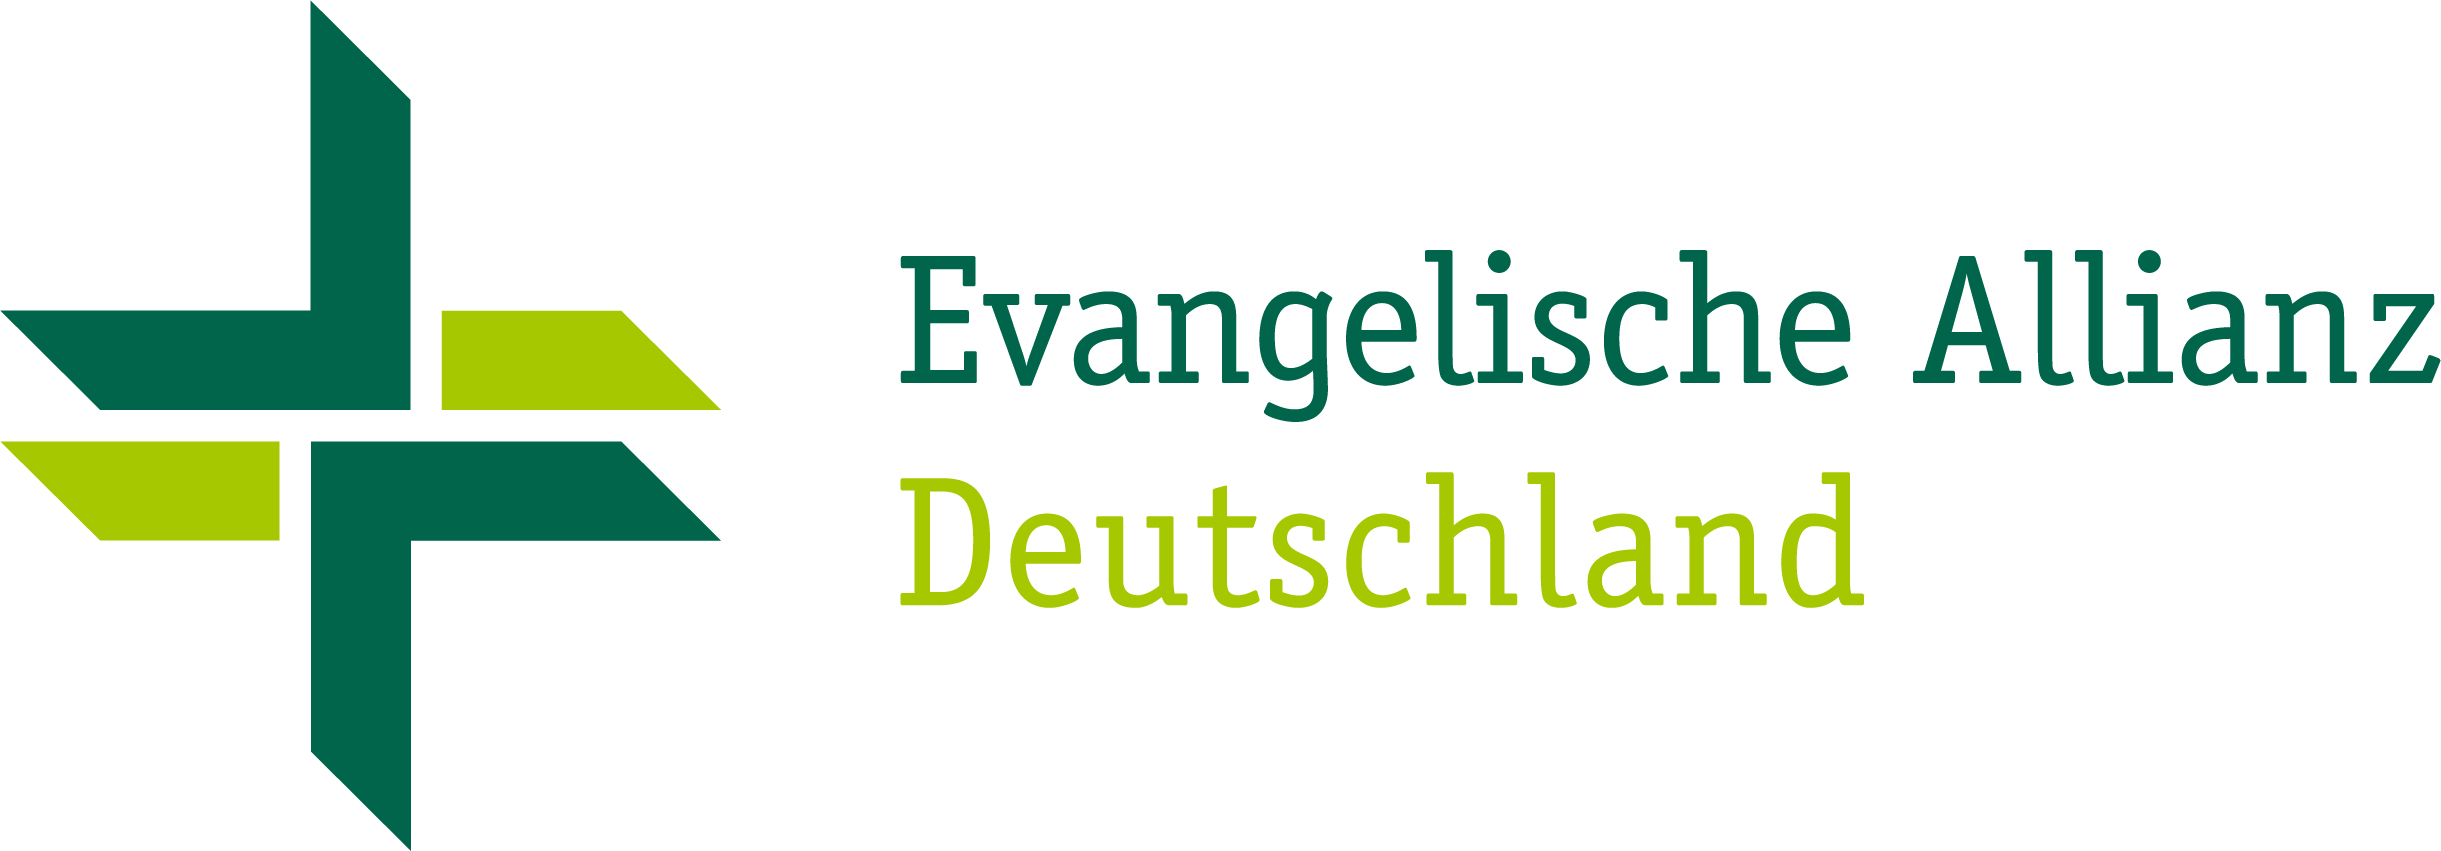 Evangelische Allianz Deutschland